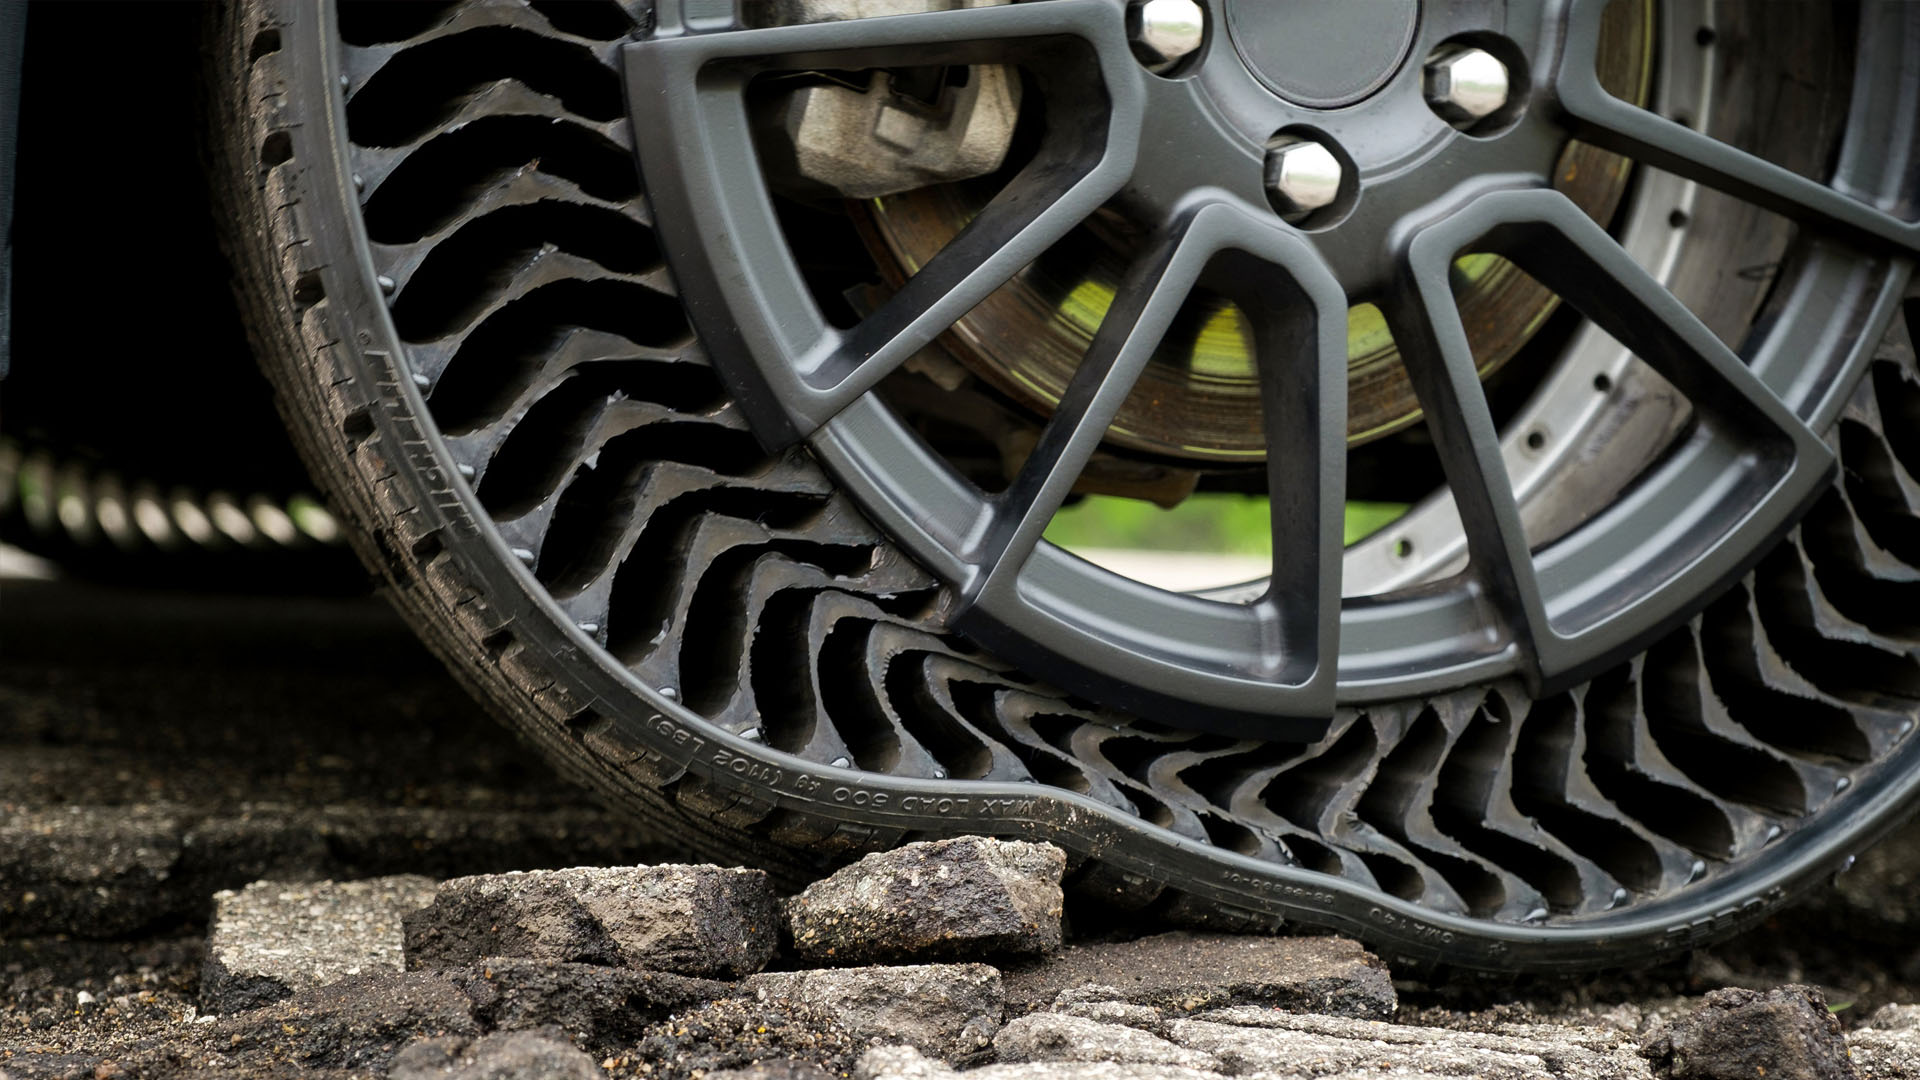 Công ty Michelin giới thiệu mẫu lốp UPTIS chống thủng với kết cấu linh hoạt tại một triển lãm xe ở Munich